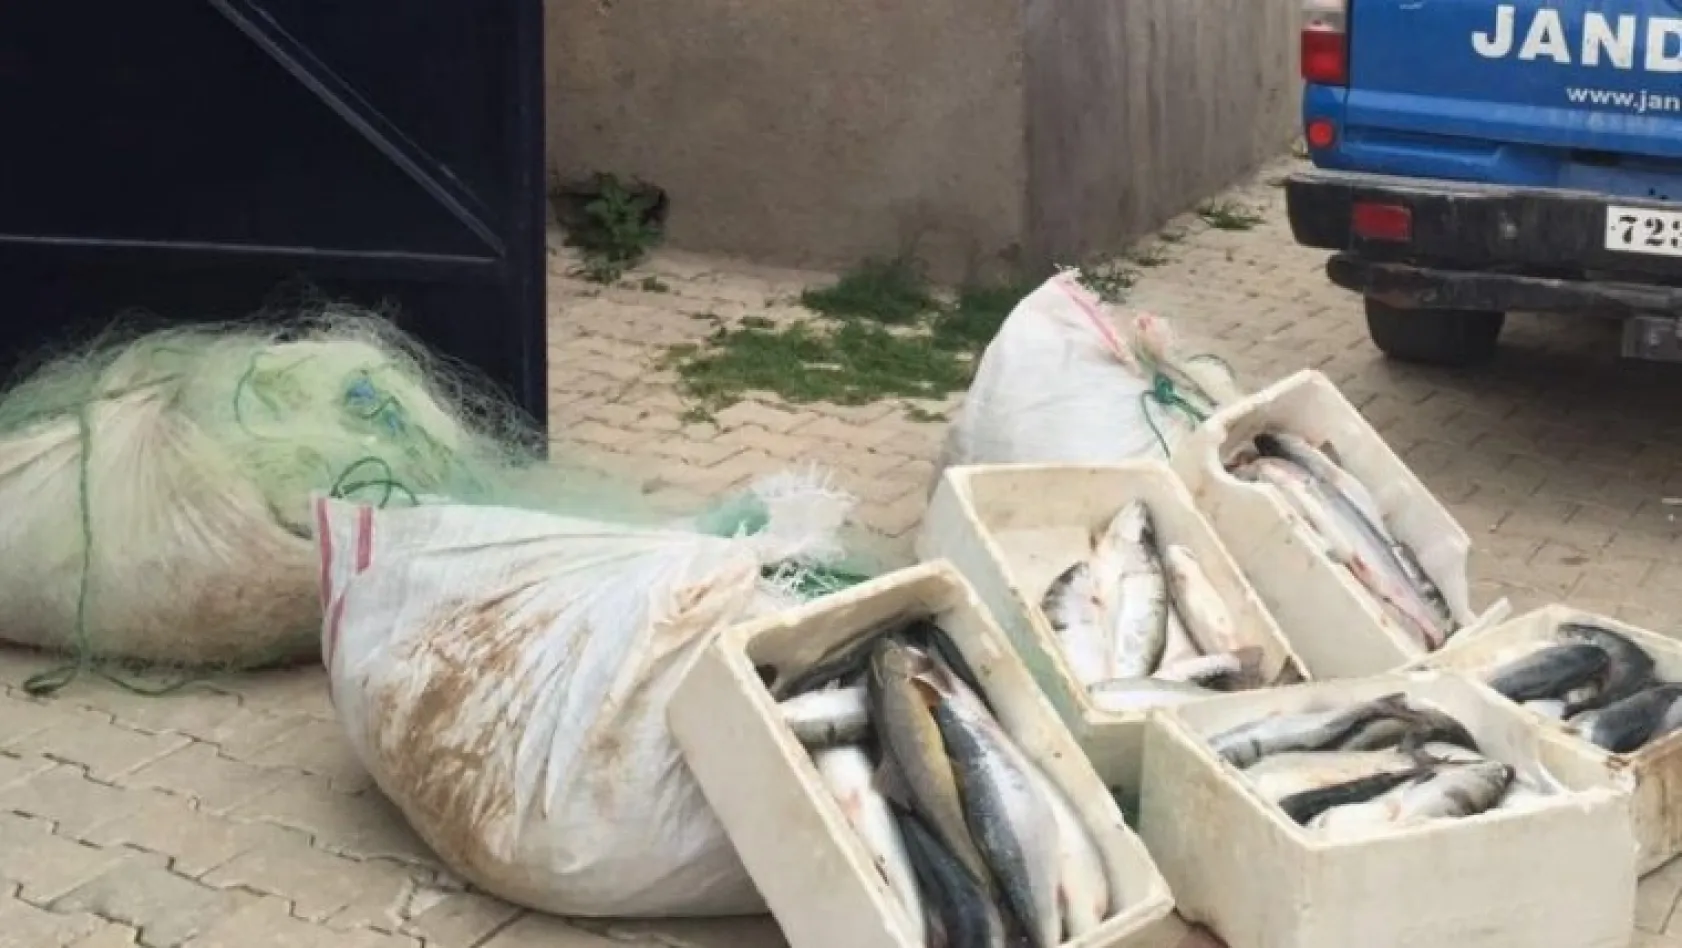 Kaçak avlanan balıkçılara 4 bin 500 lira ceza